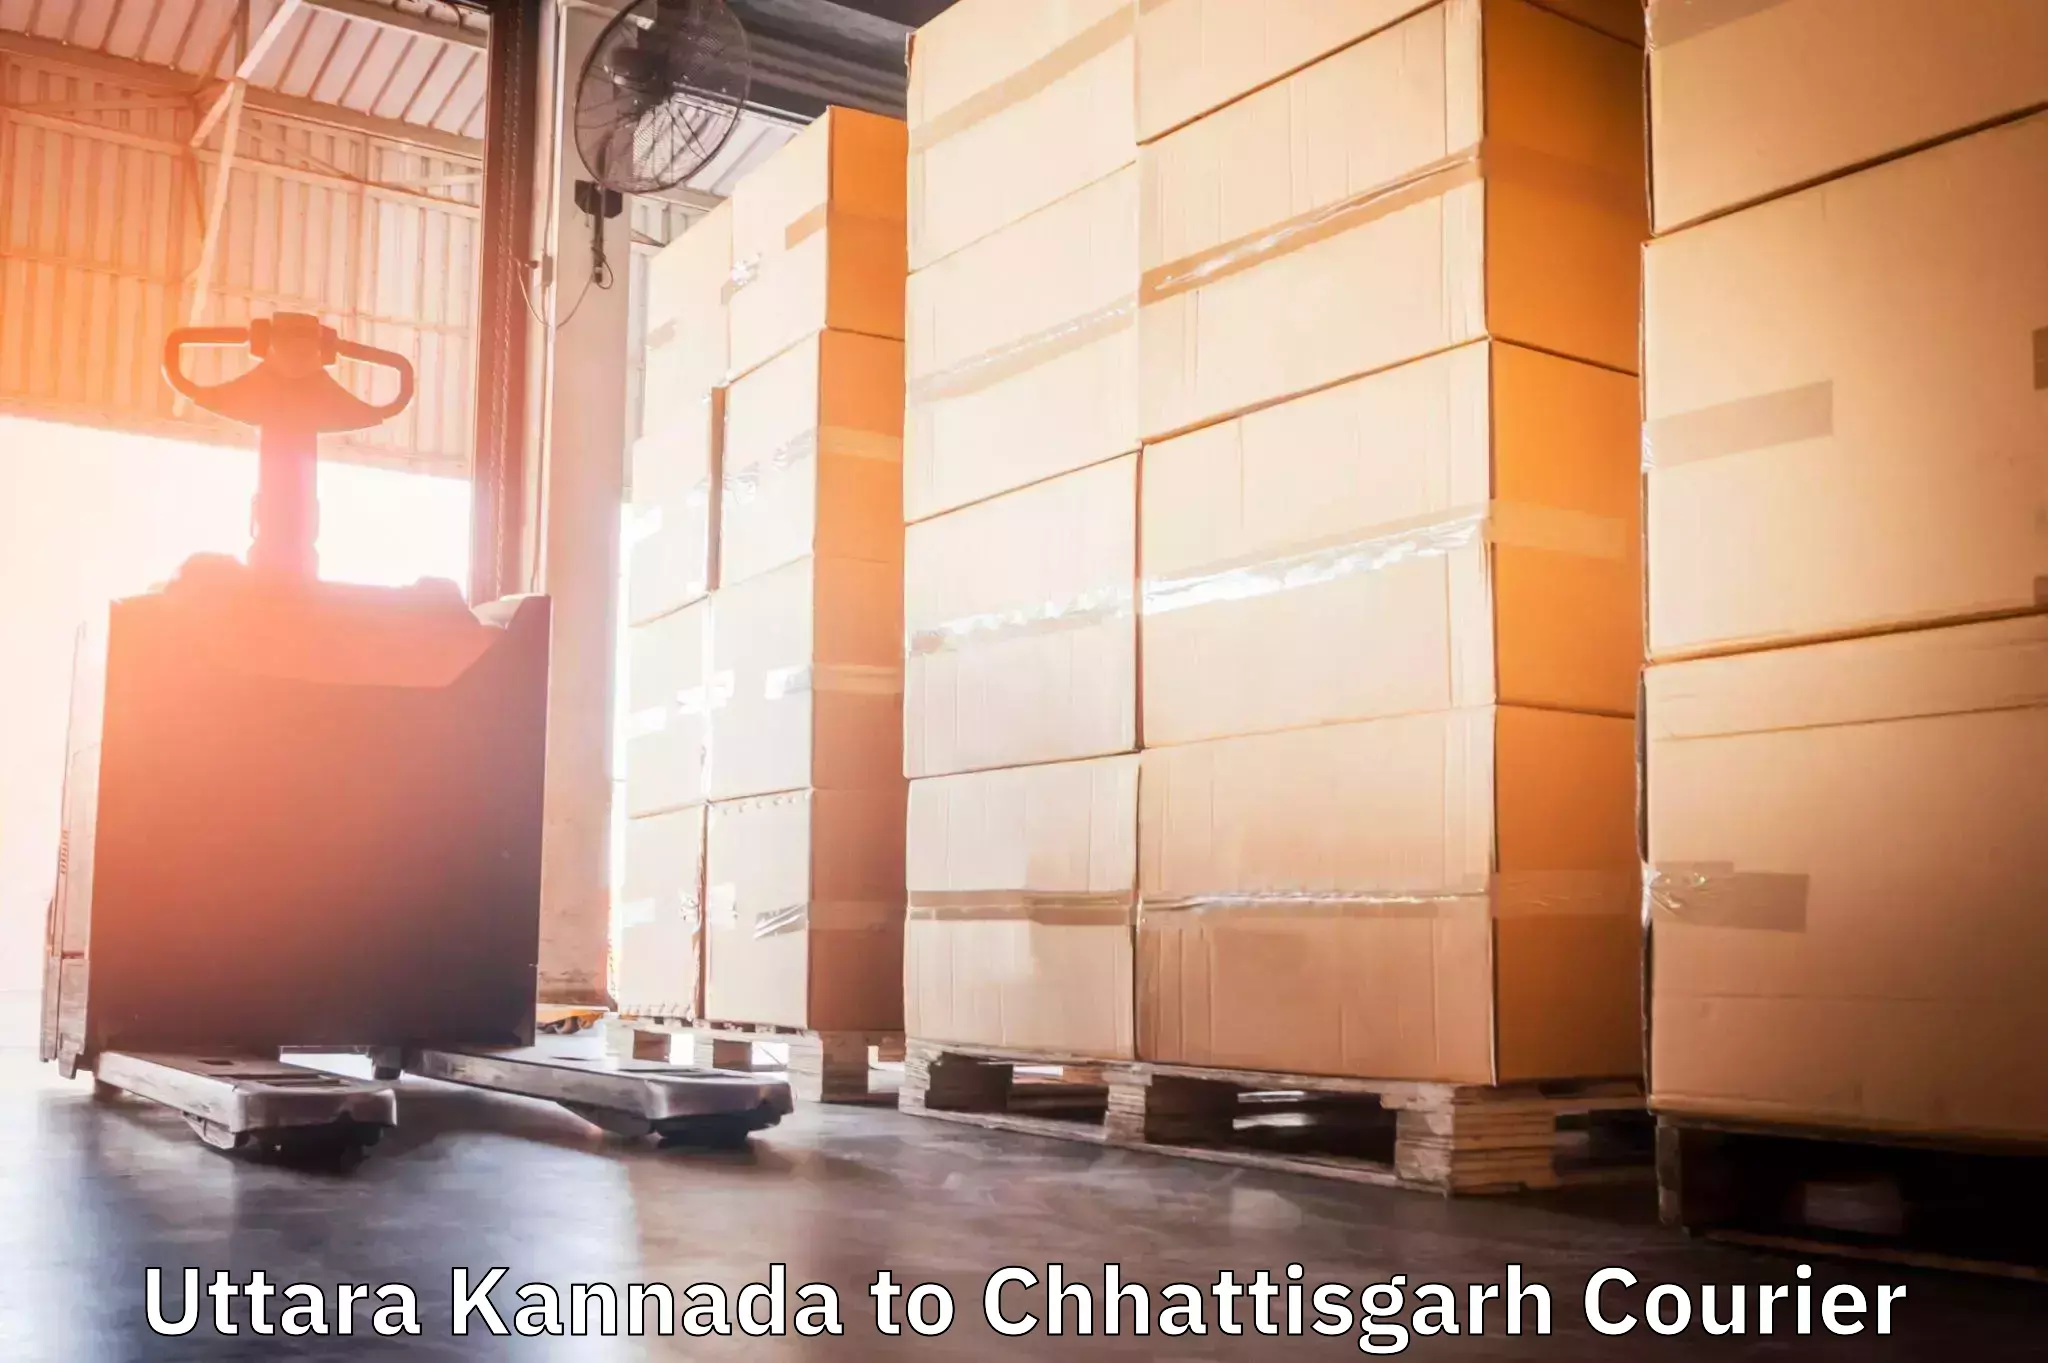 Efficient parcel transport Uttara Kannada to Baramkela